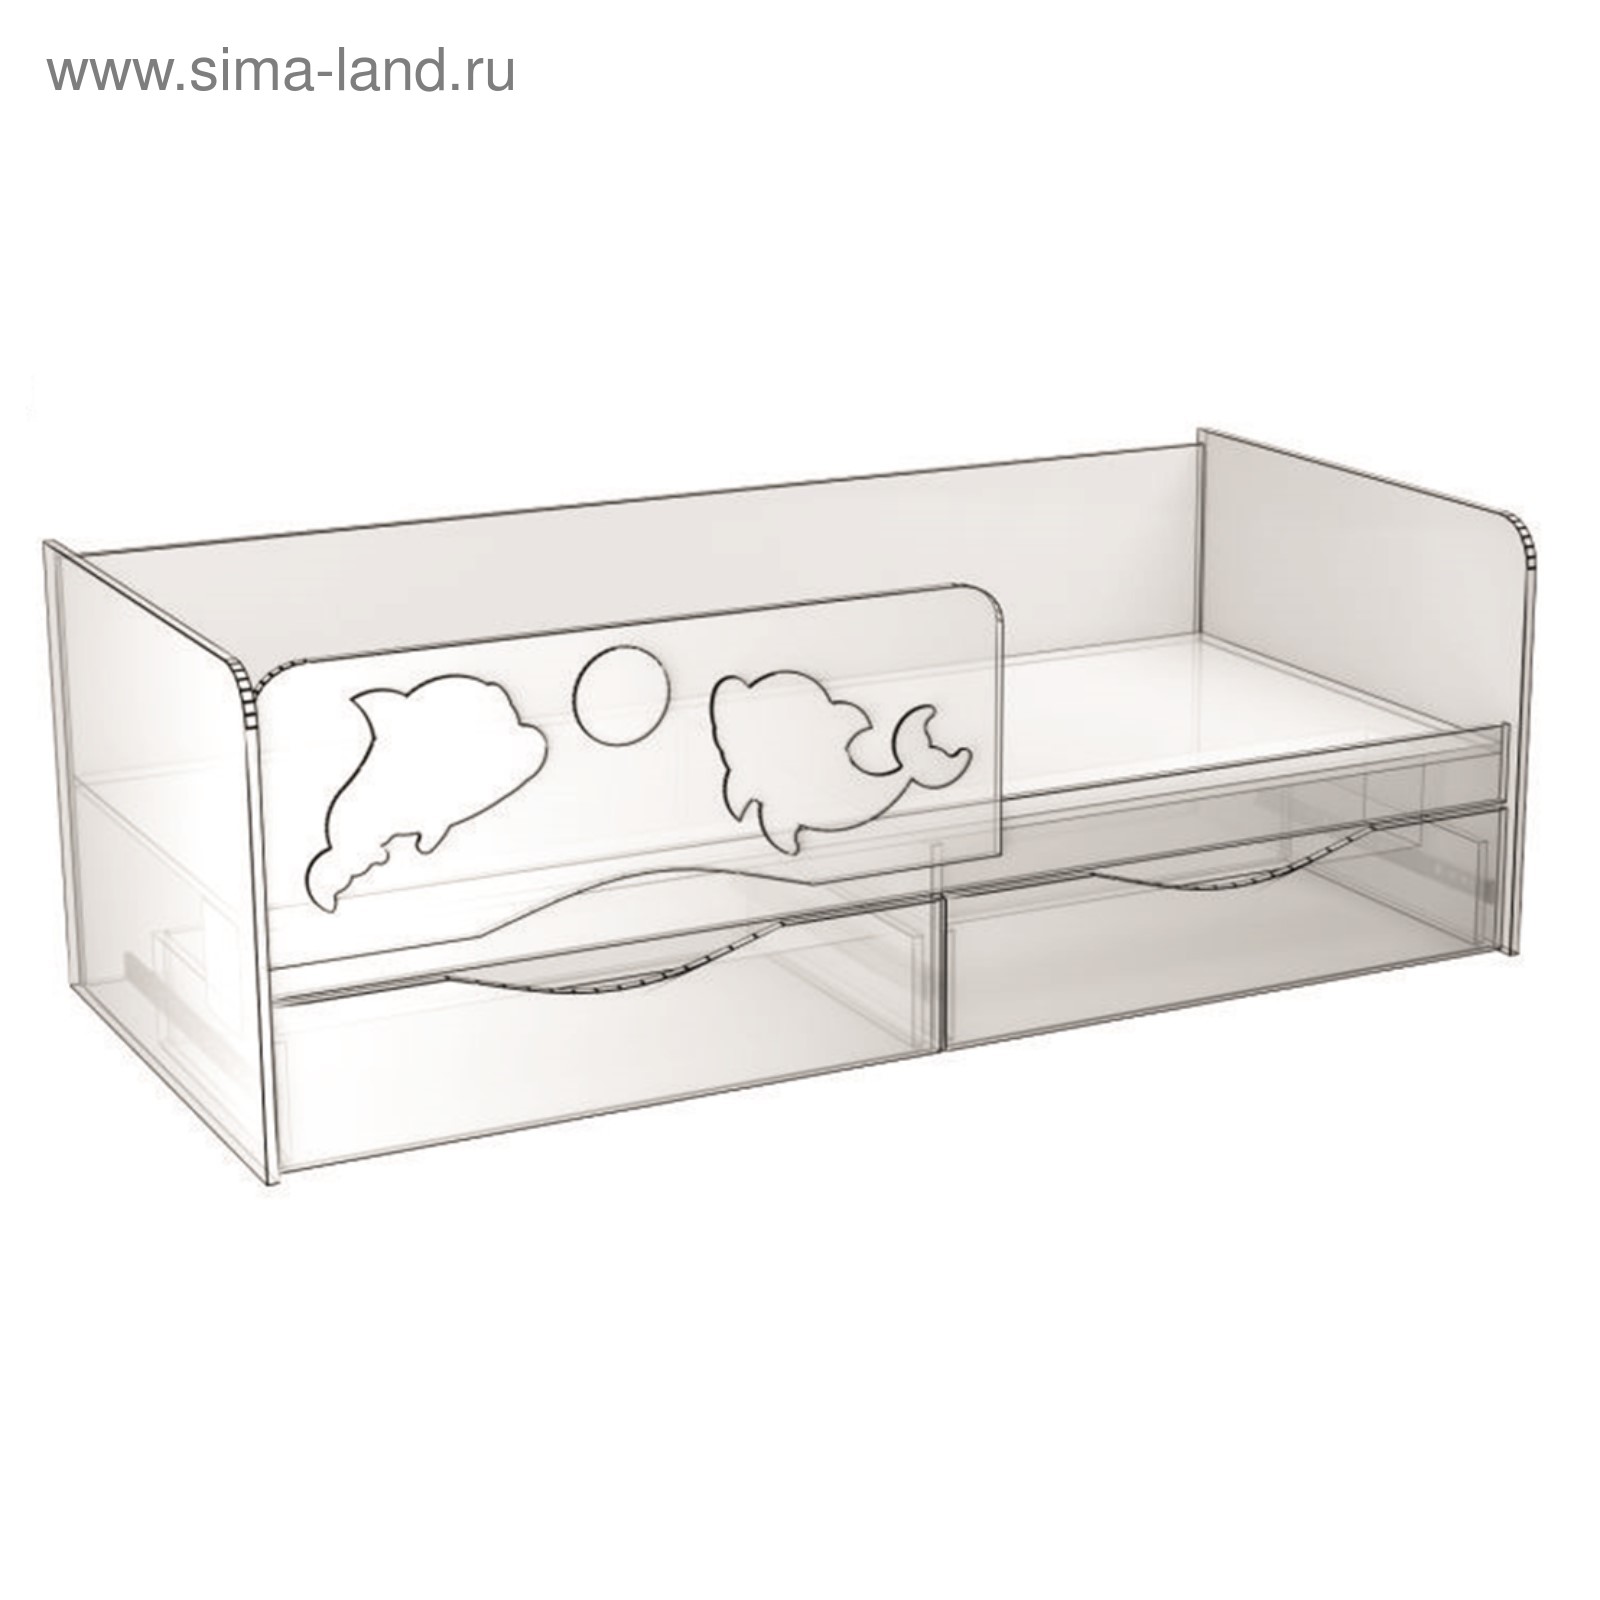 кровать детская дельфин с ящиками схема сборки